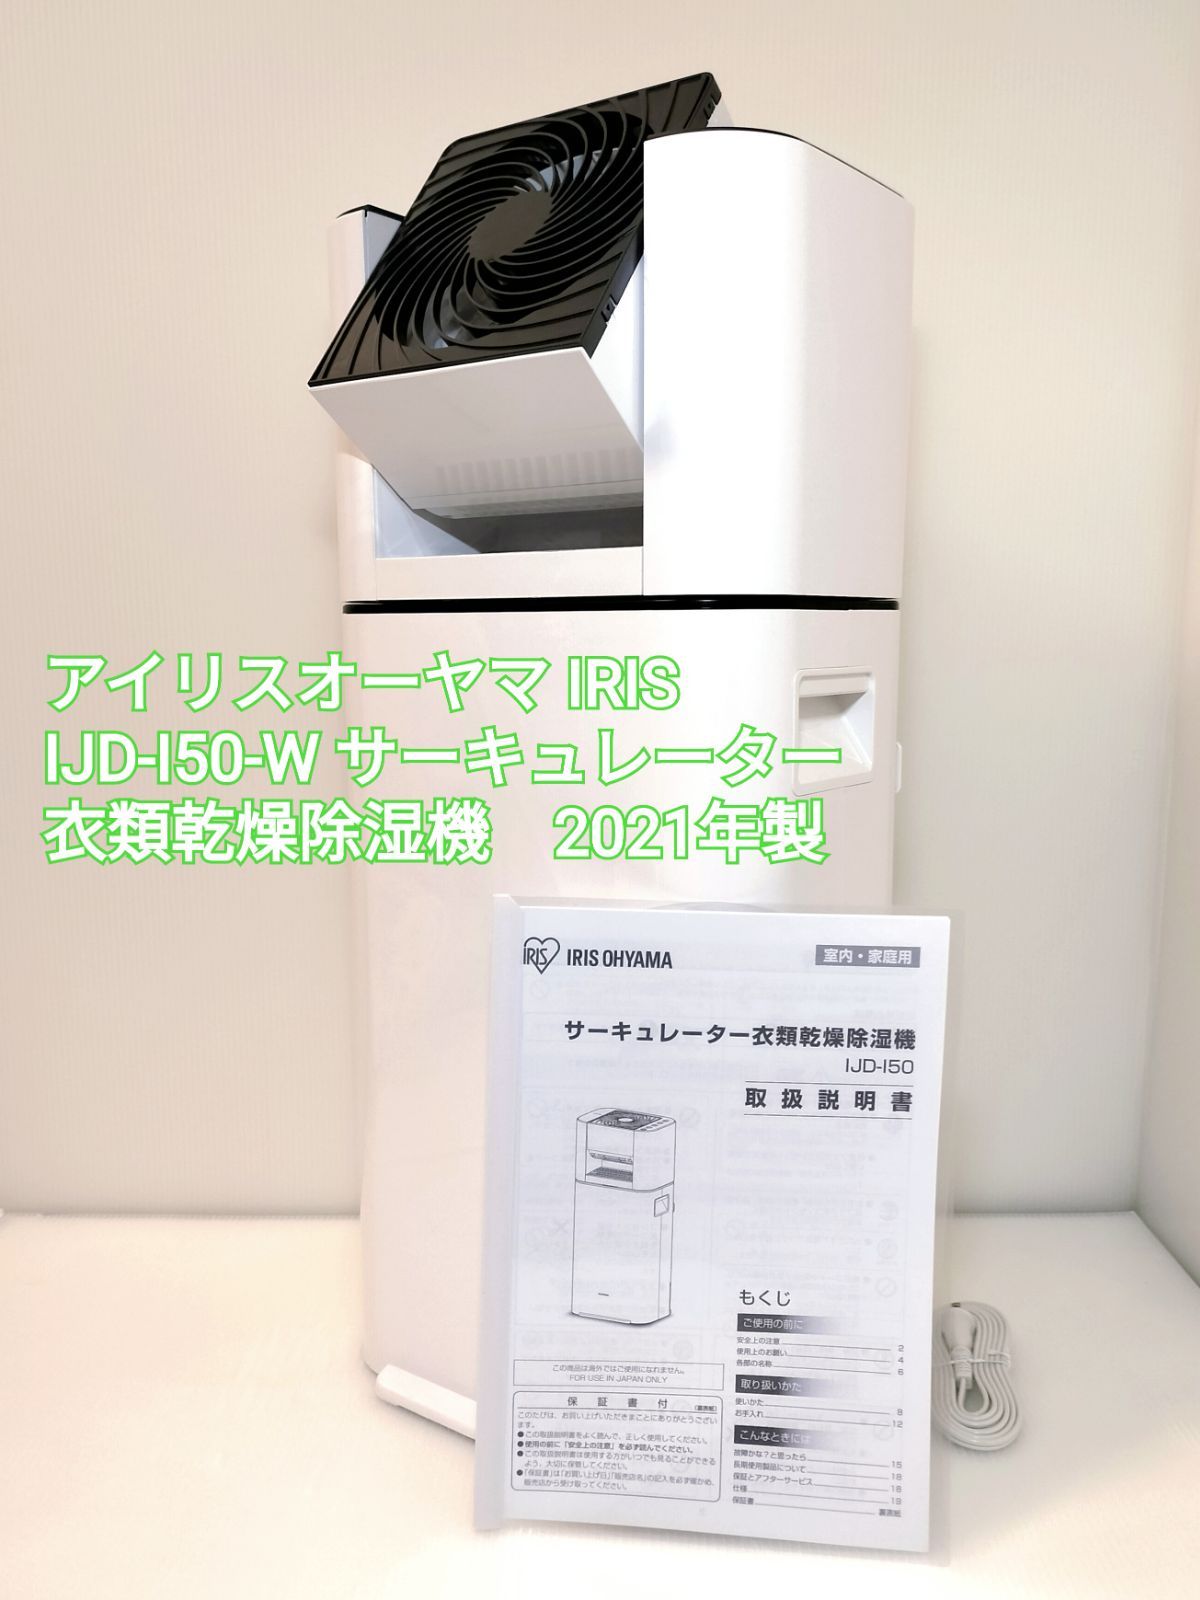 アイリスオーヤマ IRIS IJD-I50-W サーキュレーター衣類乾燥除湿機